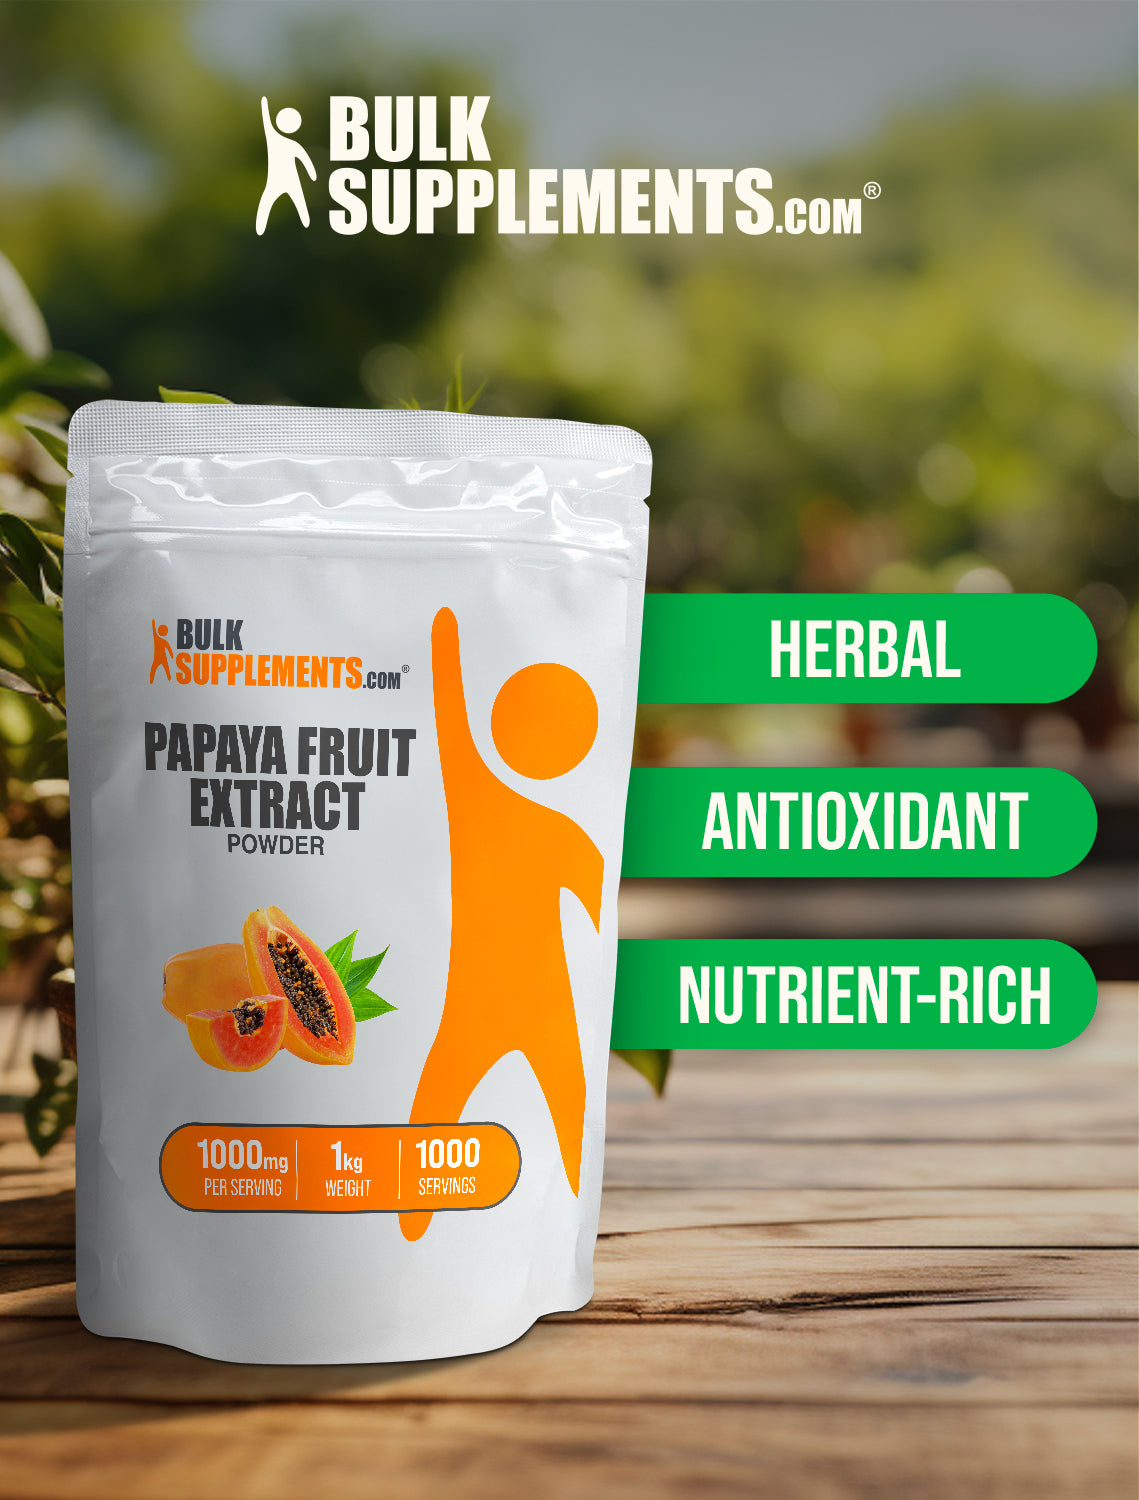 Papaya fruit extract powder 1kg keywords image